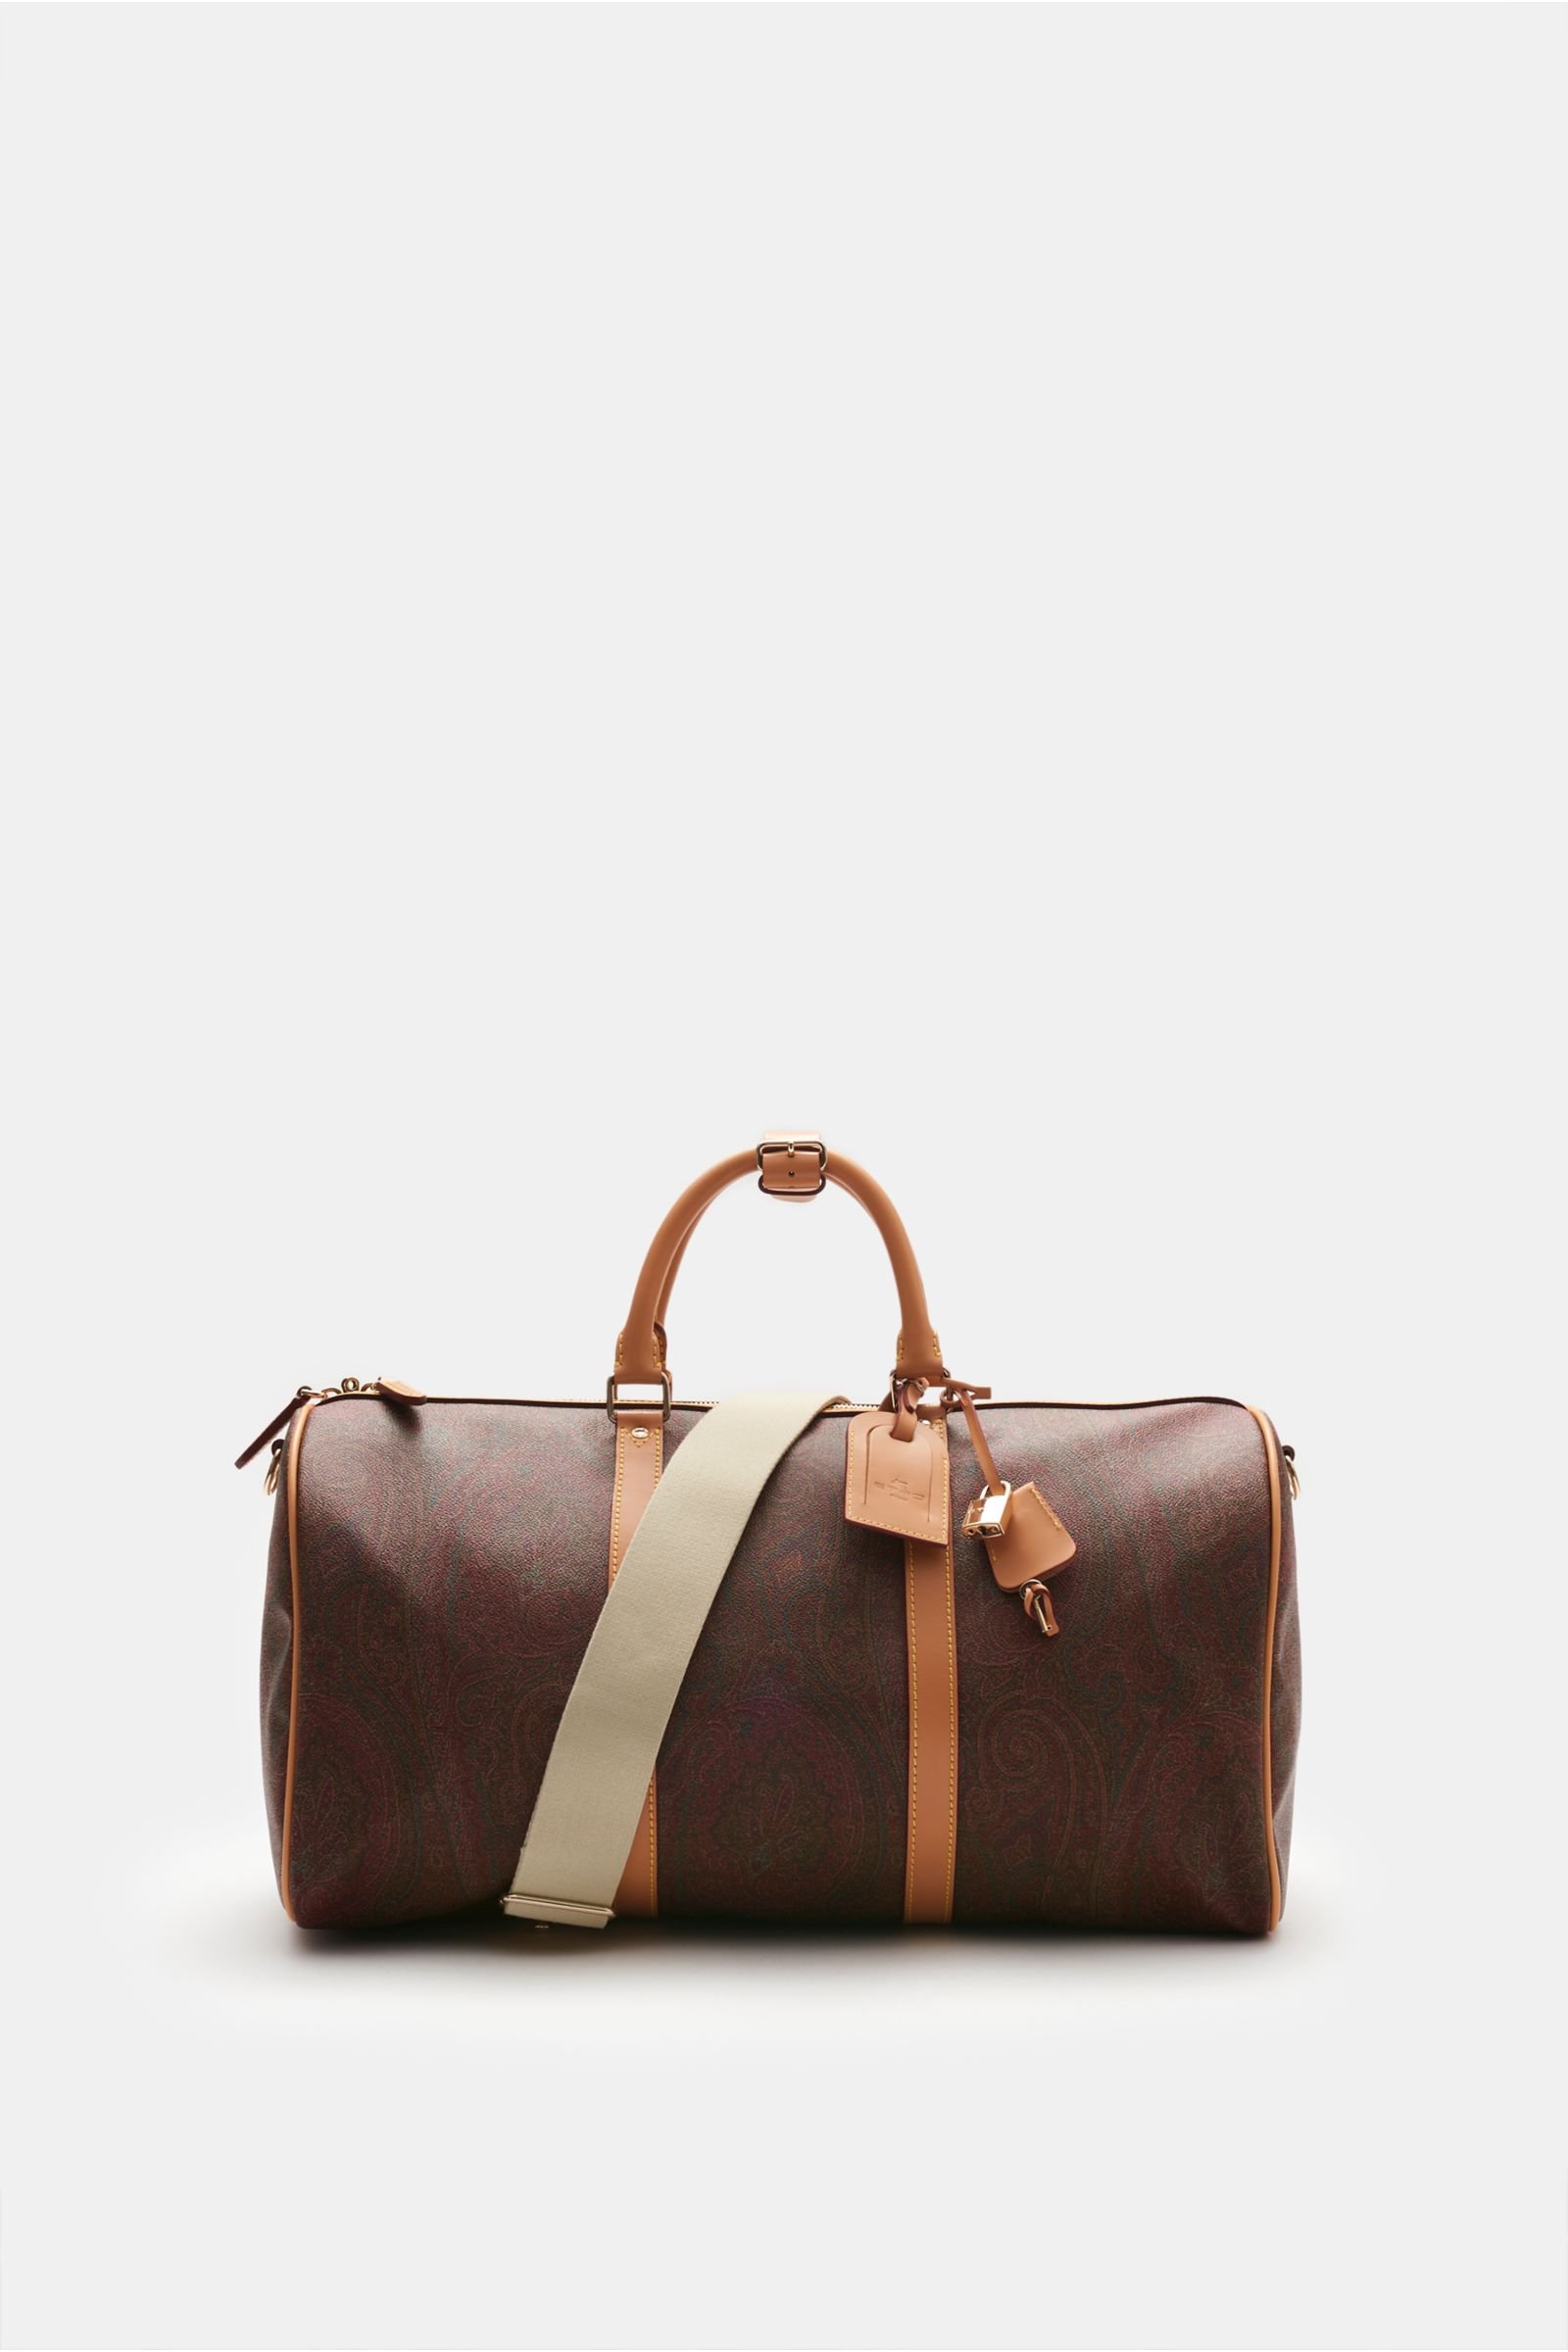 Travel bag brown patterned (size L)